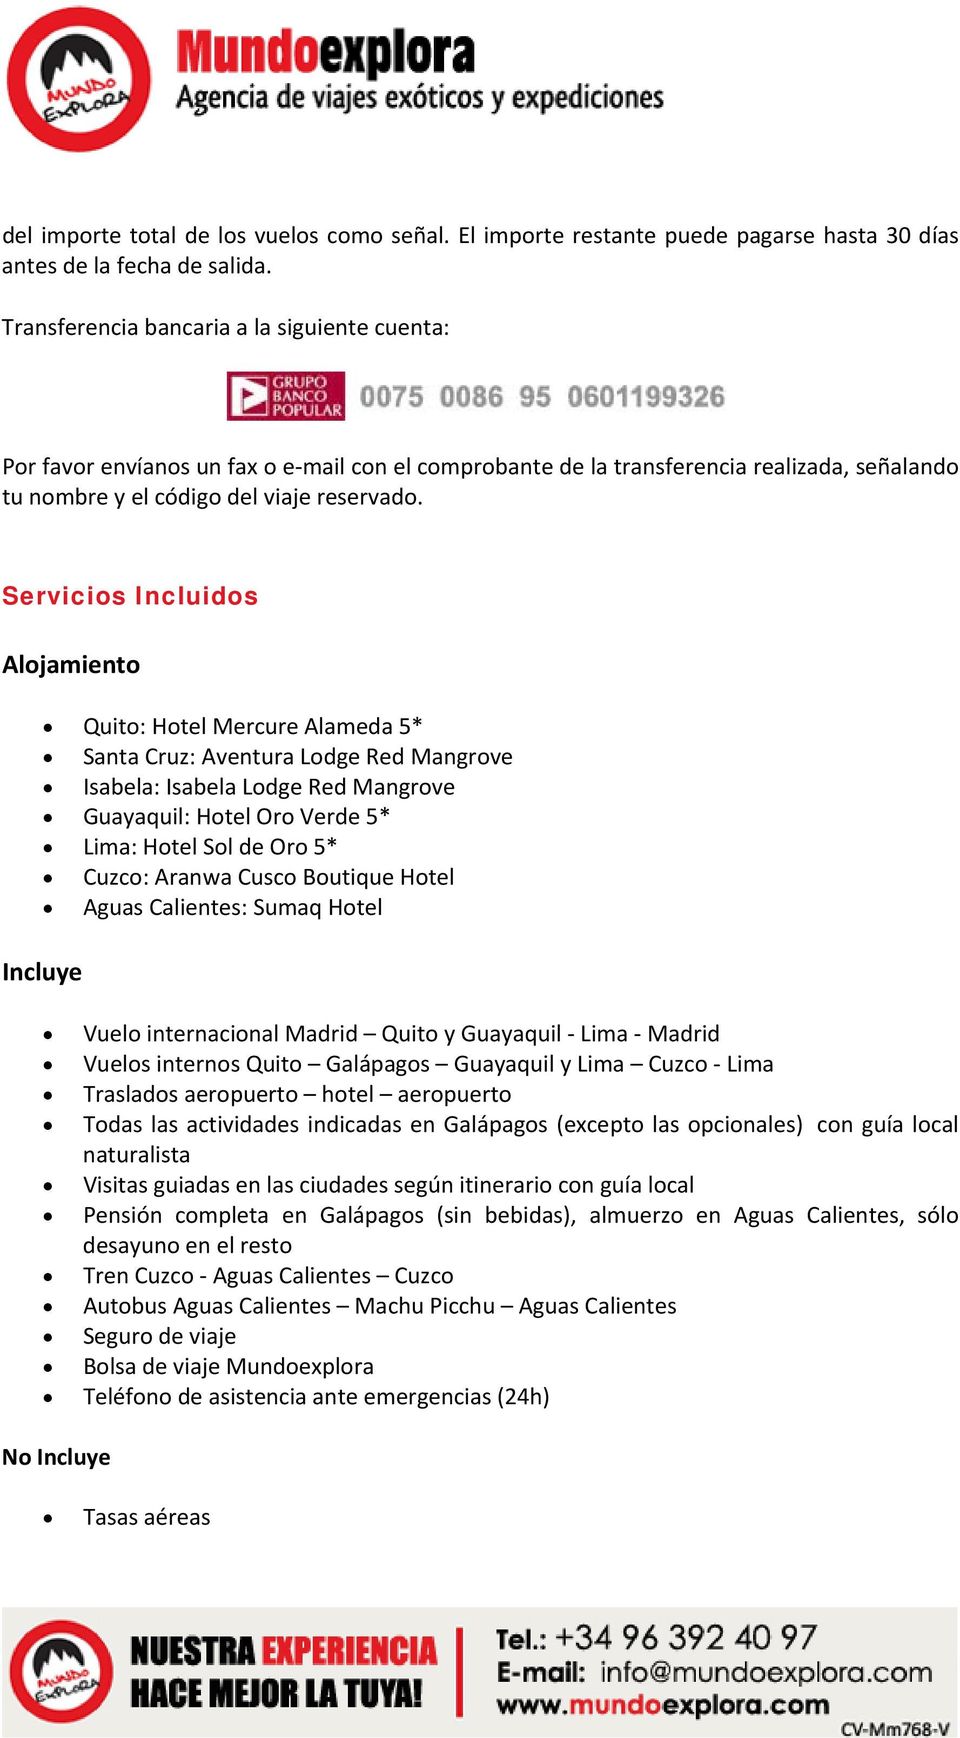 Servicios Incluidos Alojamiento Quito: Hotel Mercure Alameda 5* Santa Cruz: Aventura Lodge Red Mangrove Isabela: Isabela Lodge Red Mangrove Guayaquil: Hotel Oro Verde 5* Lima: Hotel Sol de Oro 5*